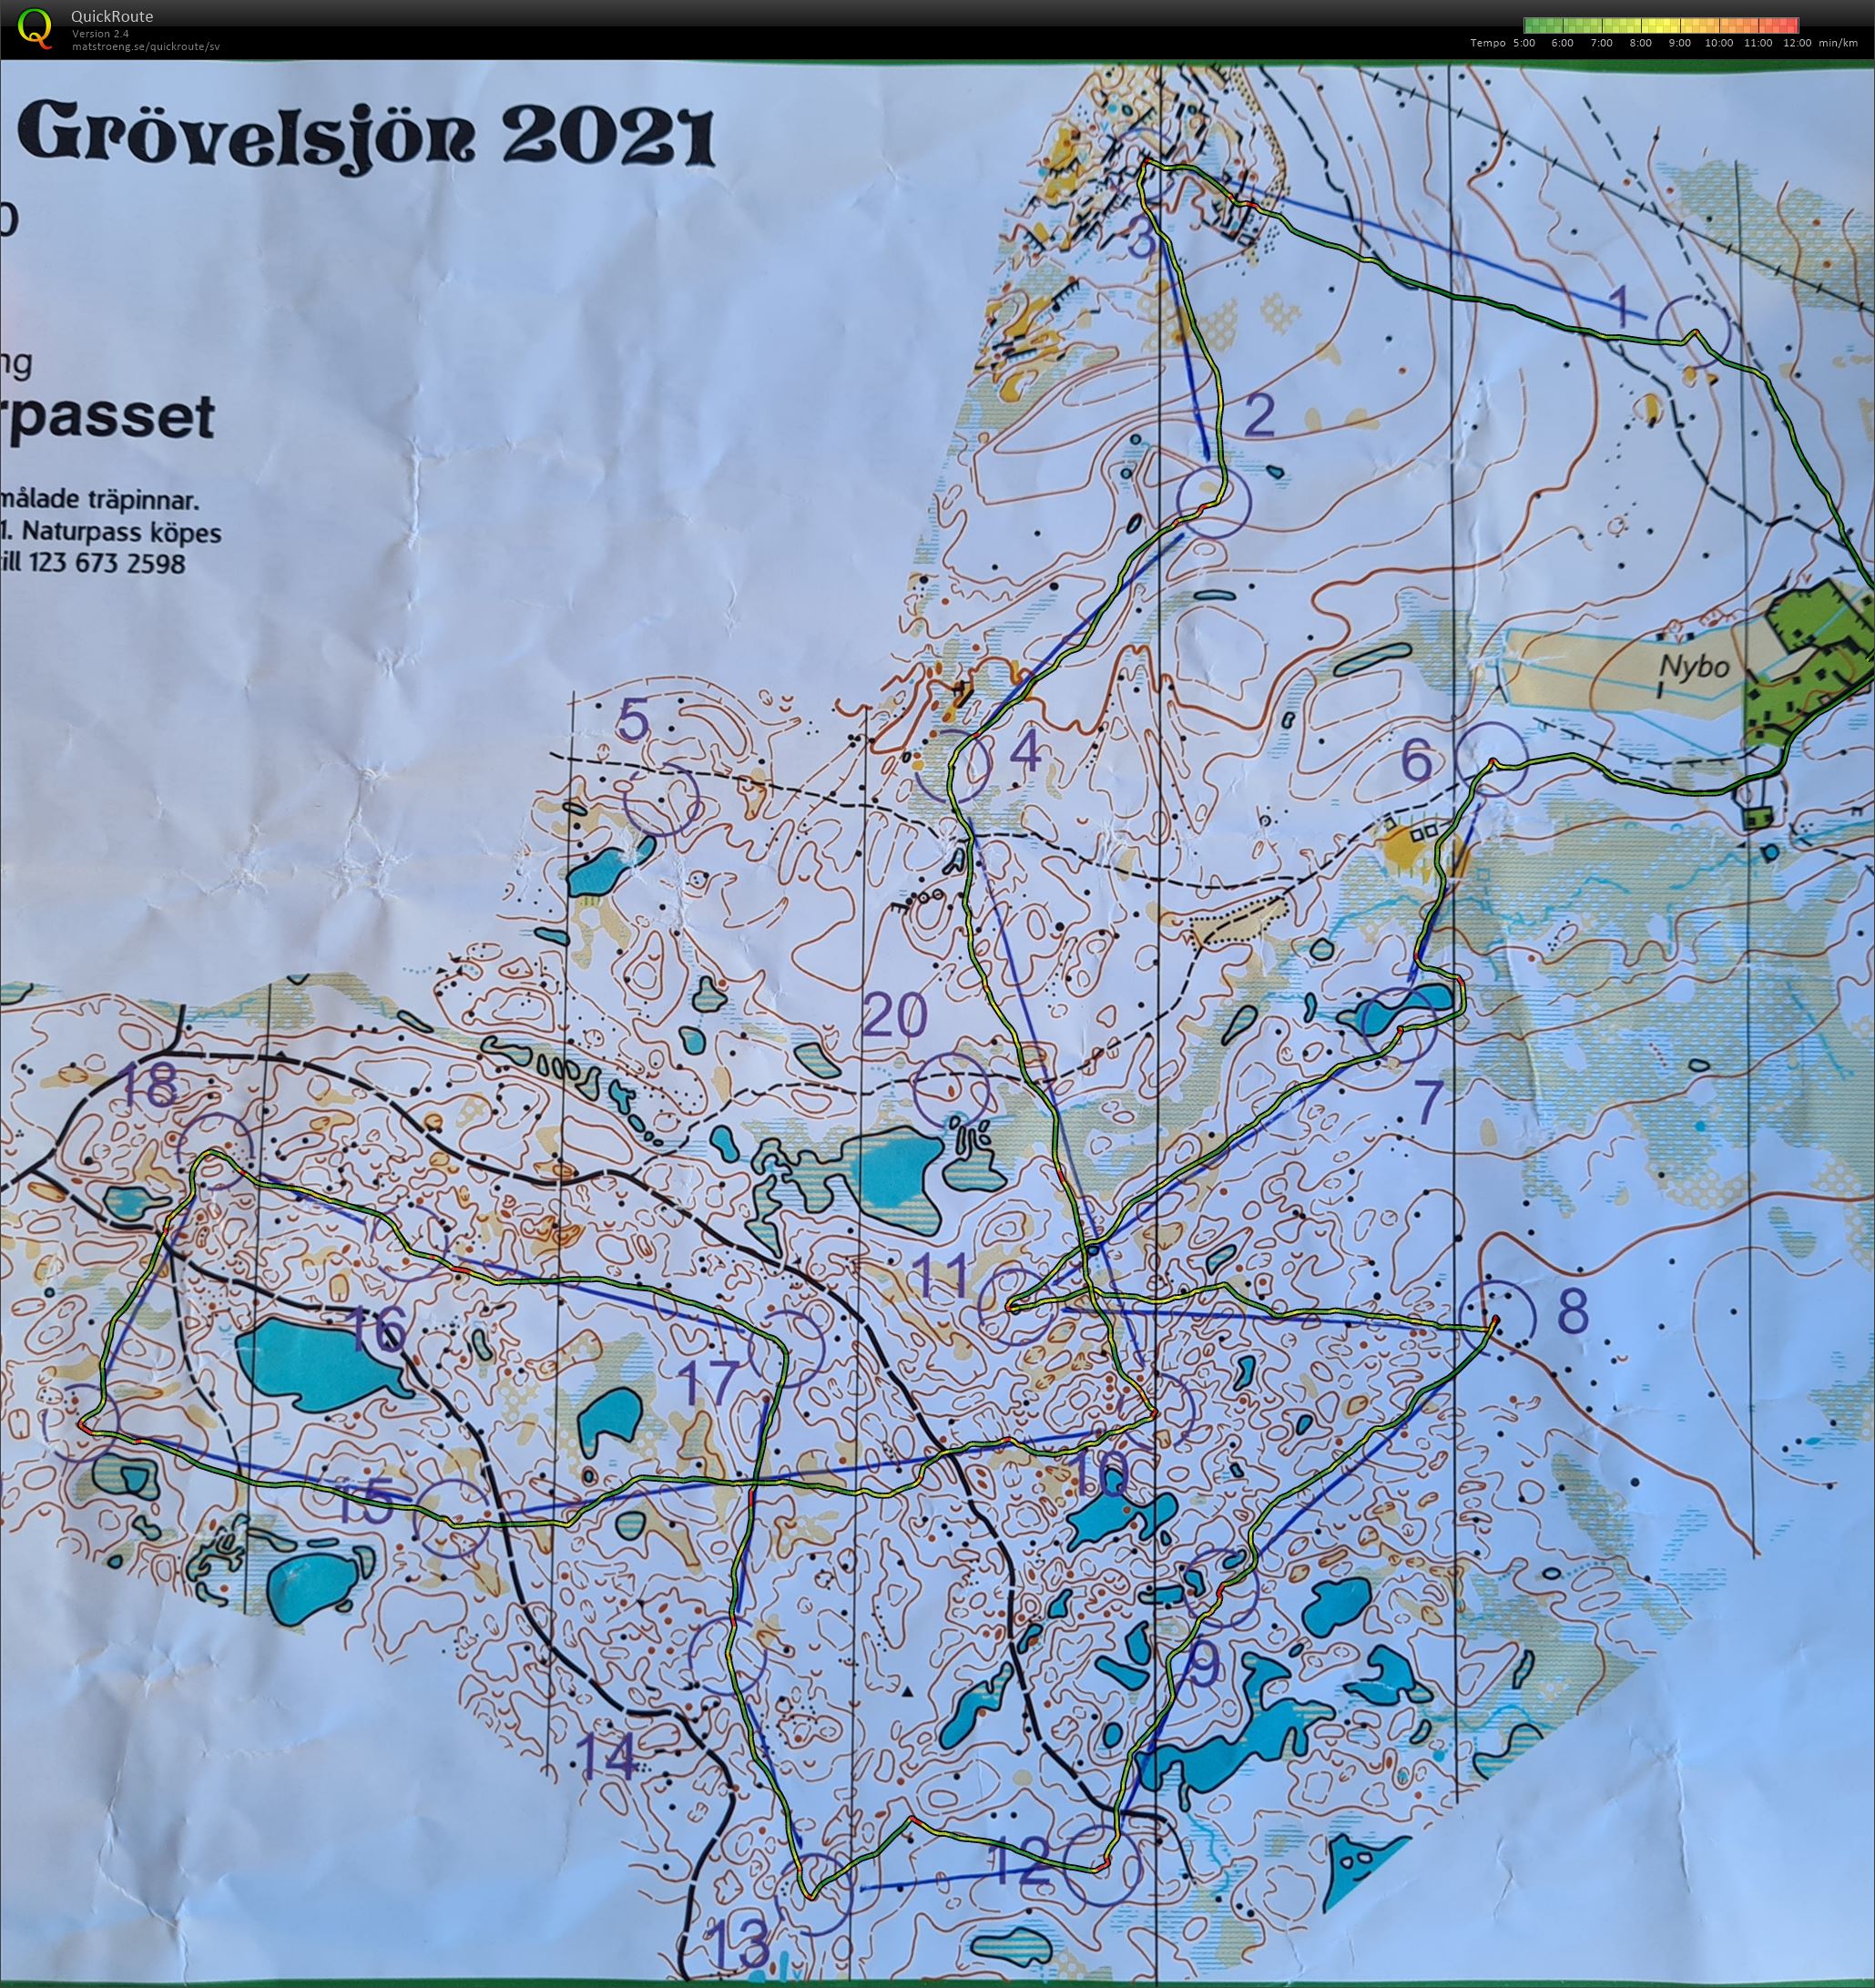 Grövelsjön: Naturpasset Nybo (28-06-2021)